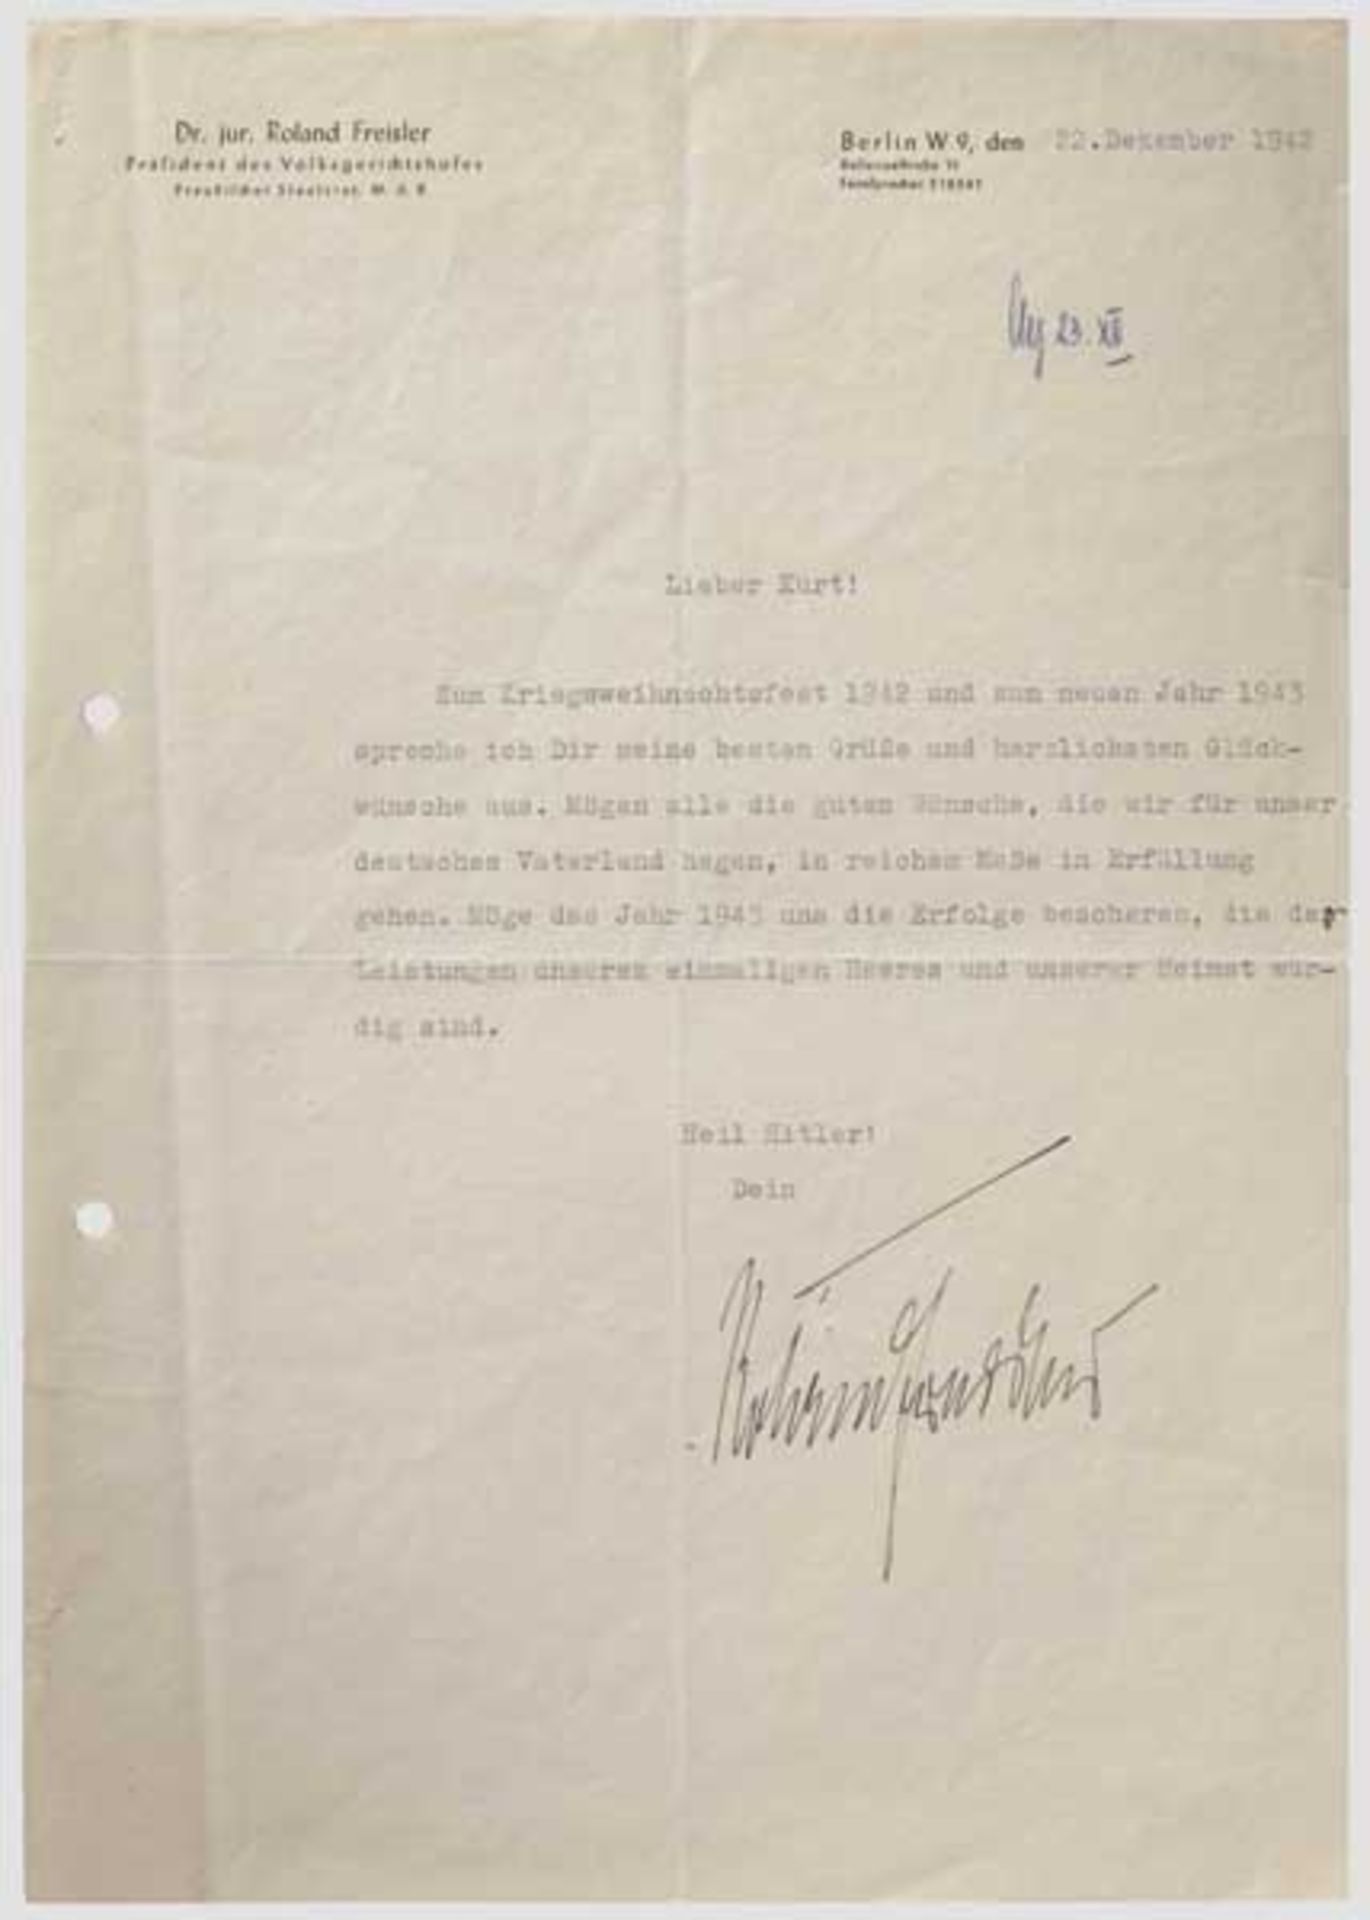 Roland Freisler - signierter Brief des Präsidenten des Volksgerichtshofes an Kurt Daluege, 1942